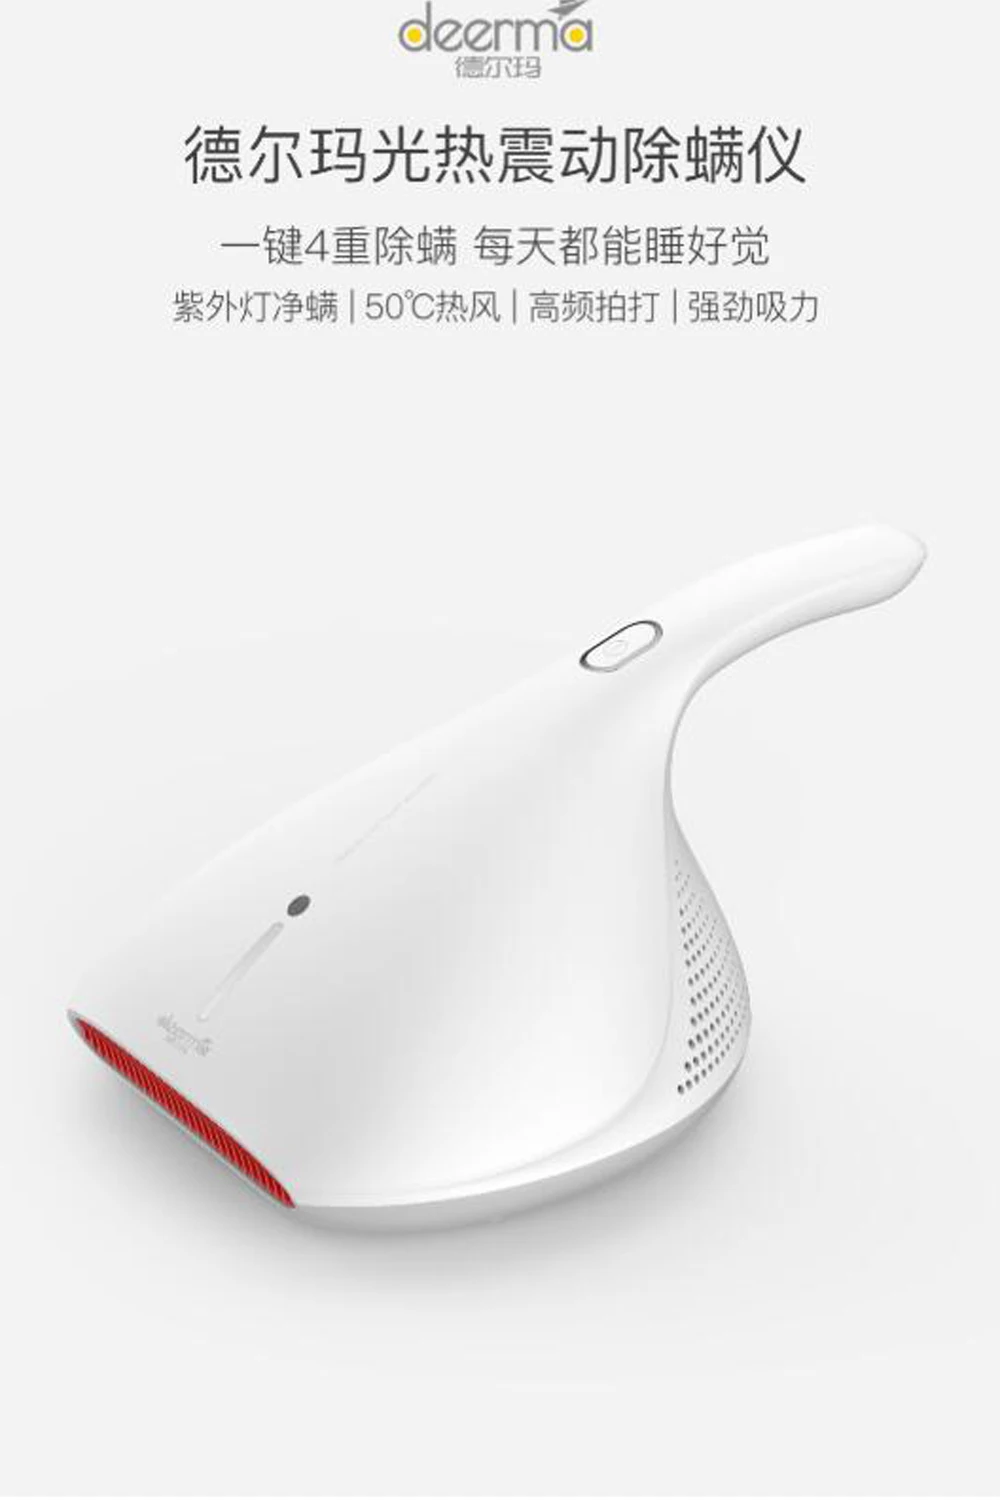 Новейший Xiaomi Deerma пылесос ручной Анти-пыль HEPA пылесос УФ клещей kill 13000Pa для кровати матрас Подушка Диван